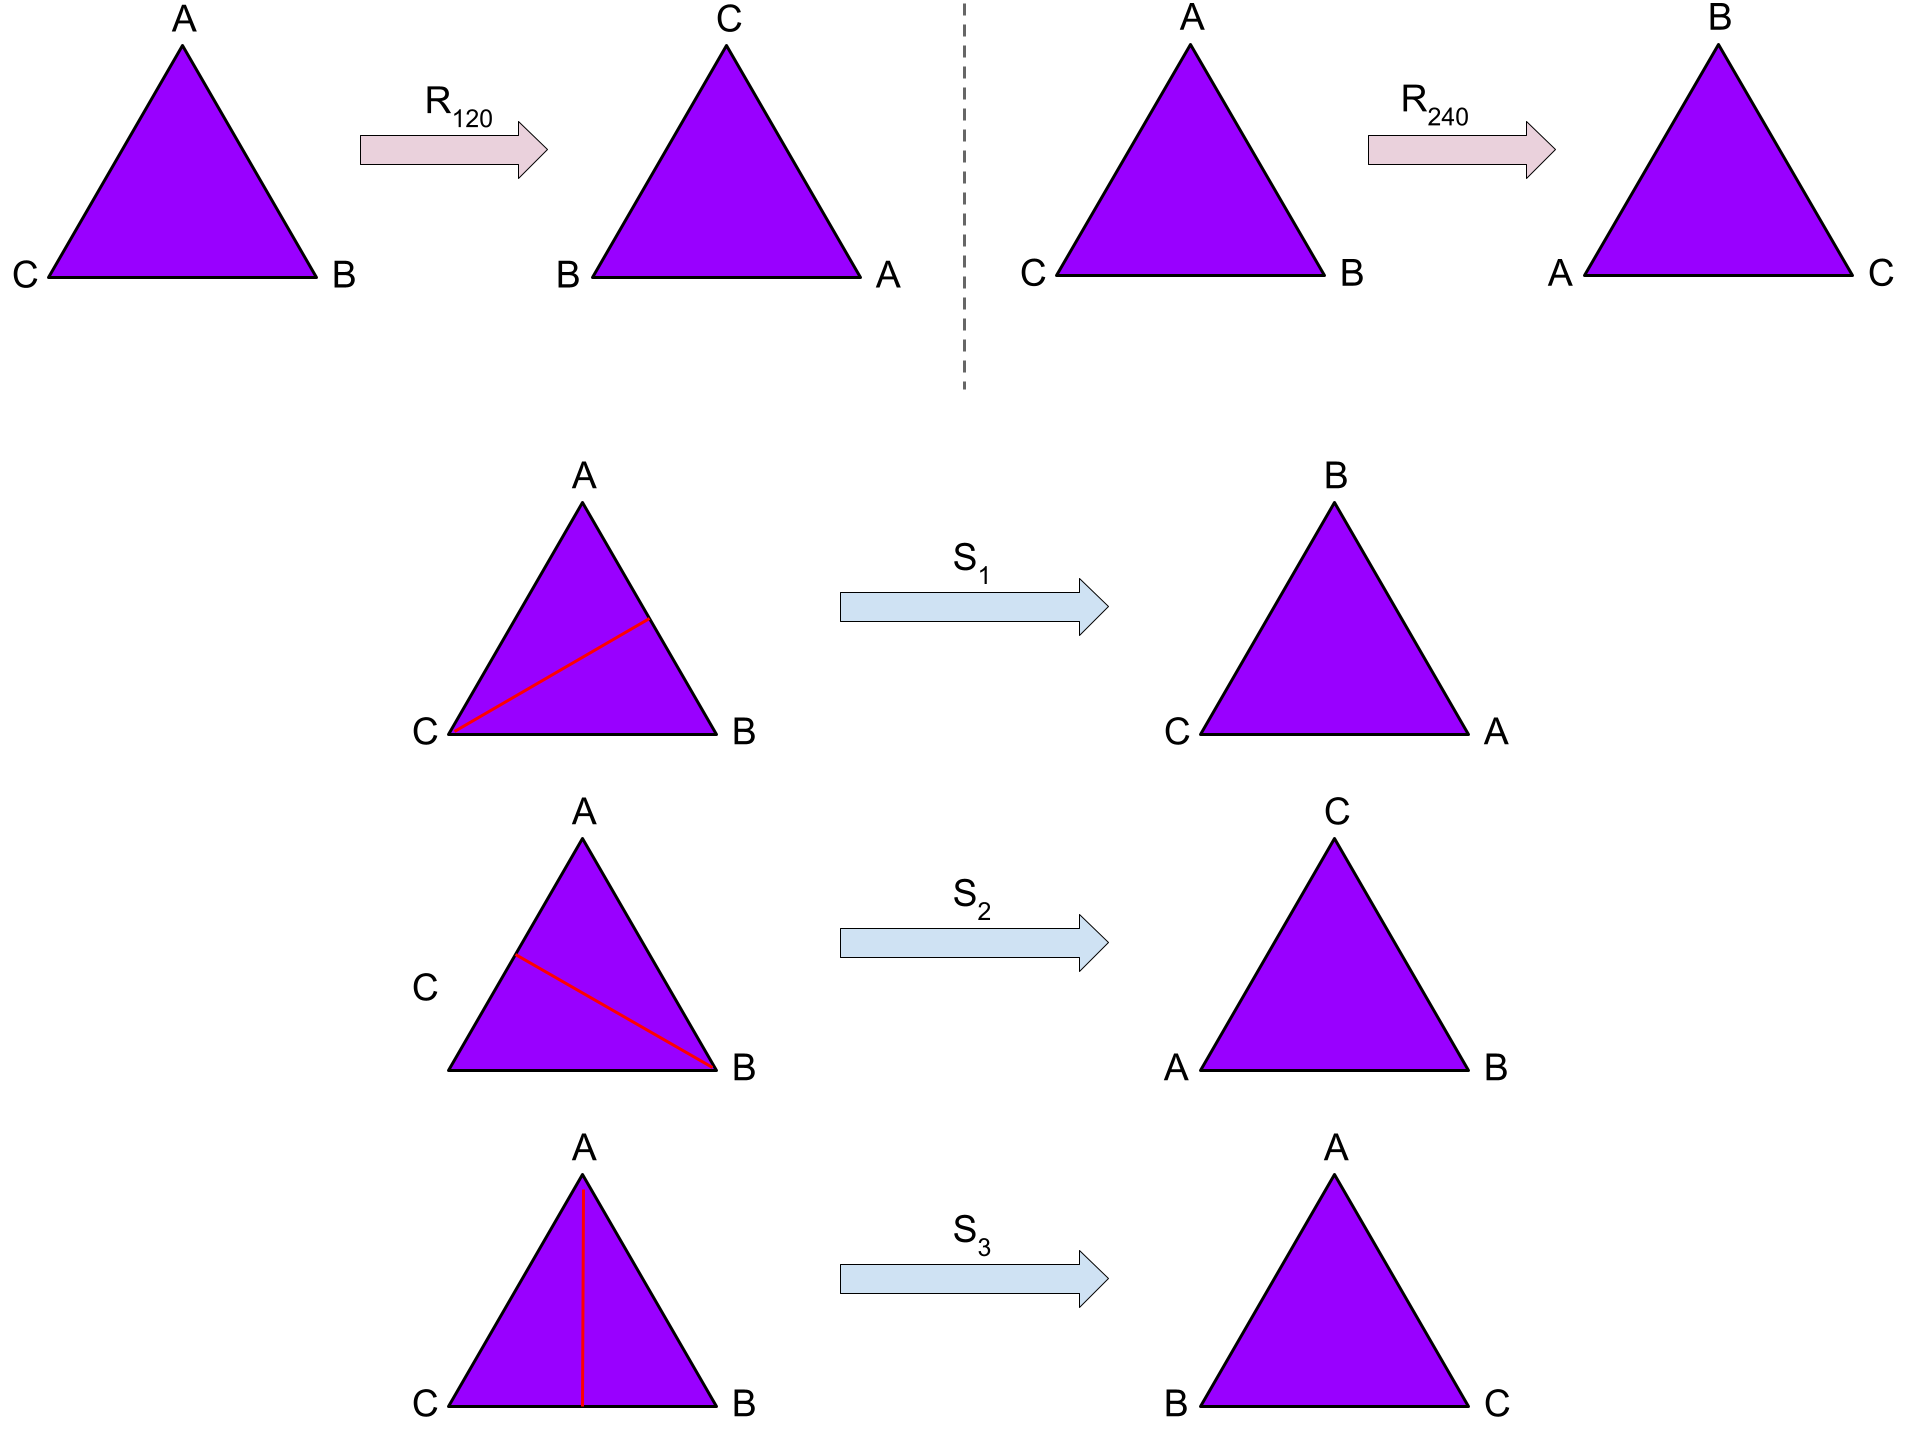 Symmetrien (Drehungen, Spiegelungen) des Dreiecks